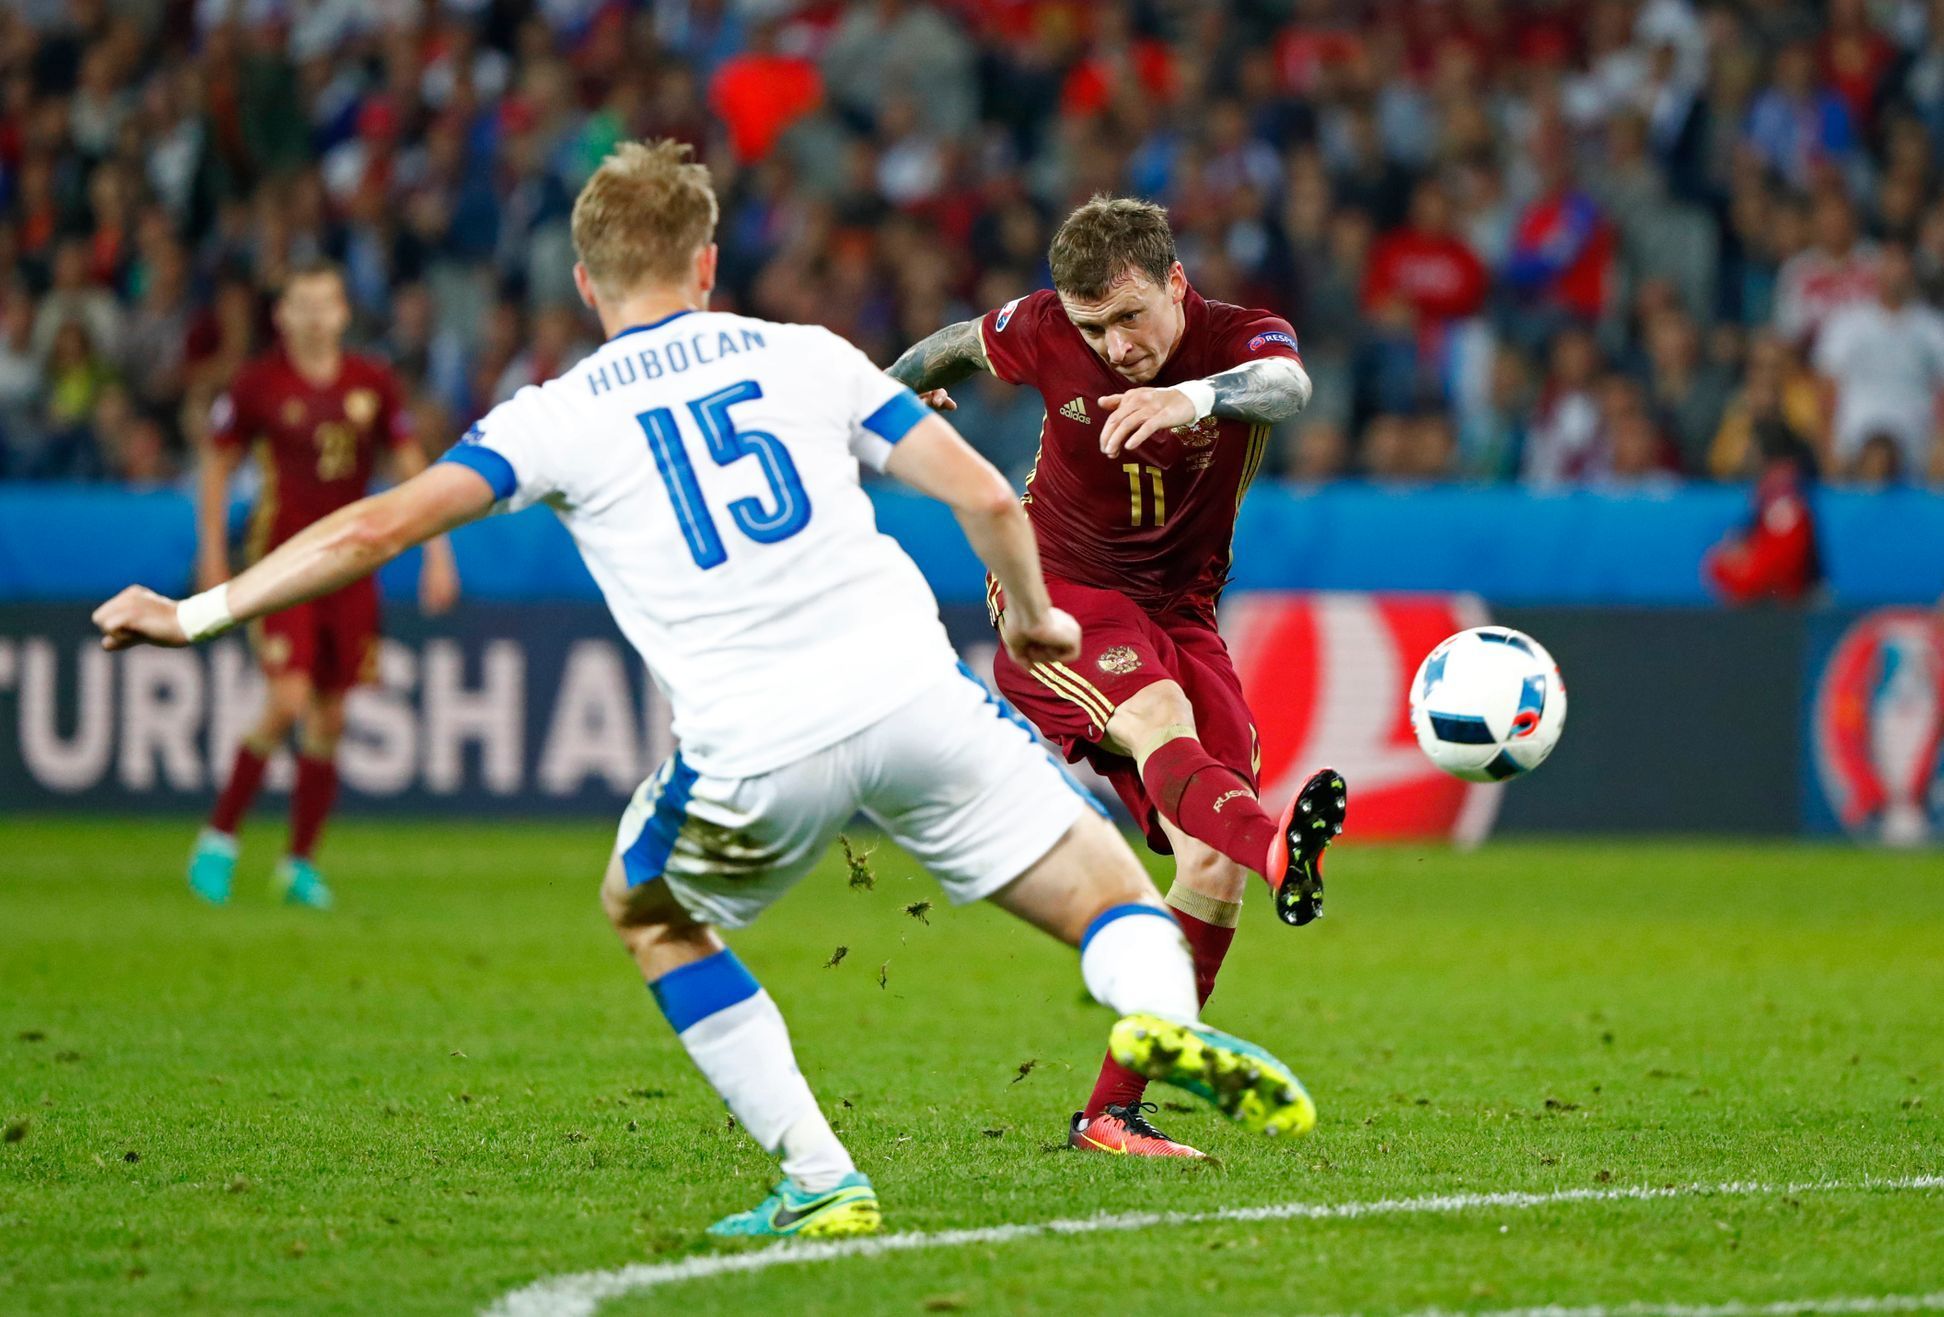 Euro 2016, Rusko-Slovensko: Pavel Mamajev dává gól na 1:2